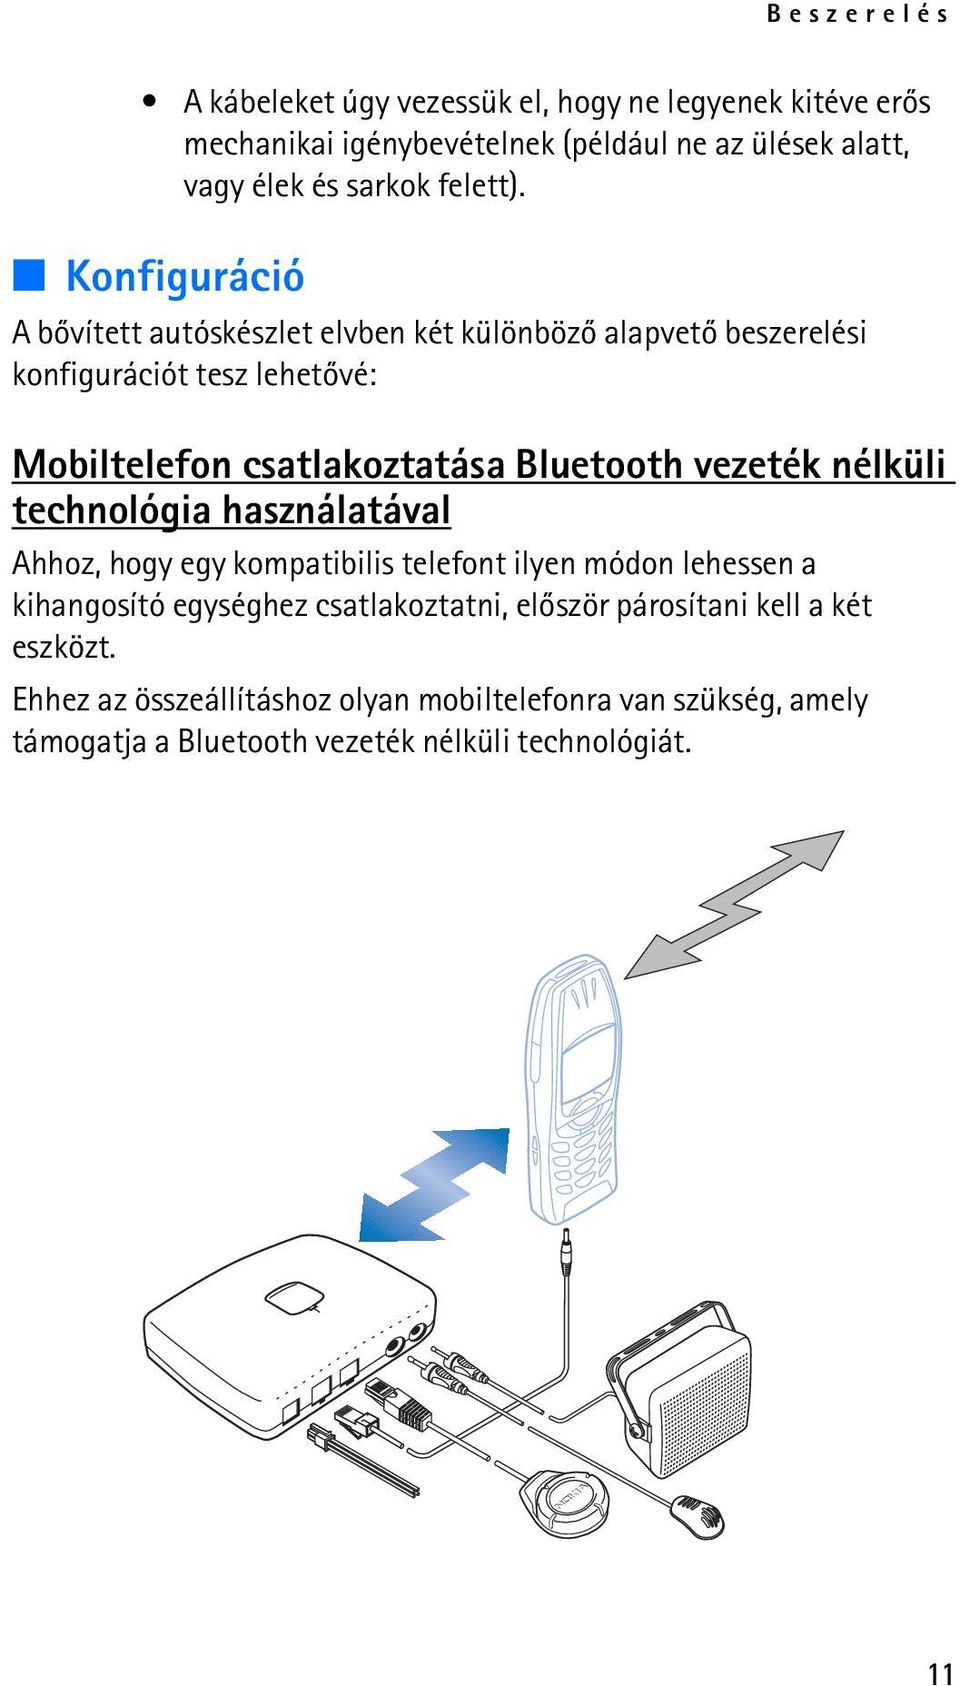 Konfiguráció A bõvített autóskészlet elvben két különbözõ alapvetõ beszerelési konfigurációt tesz lehetõvé: Mobiltelefon csatlakoztatása Bluetooth